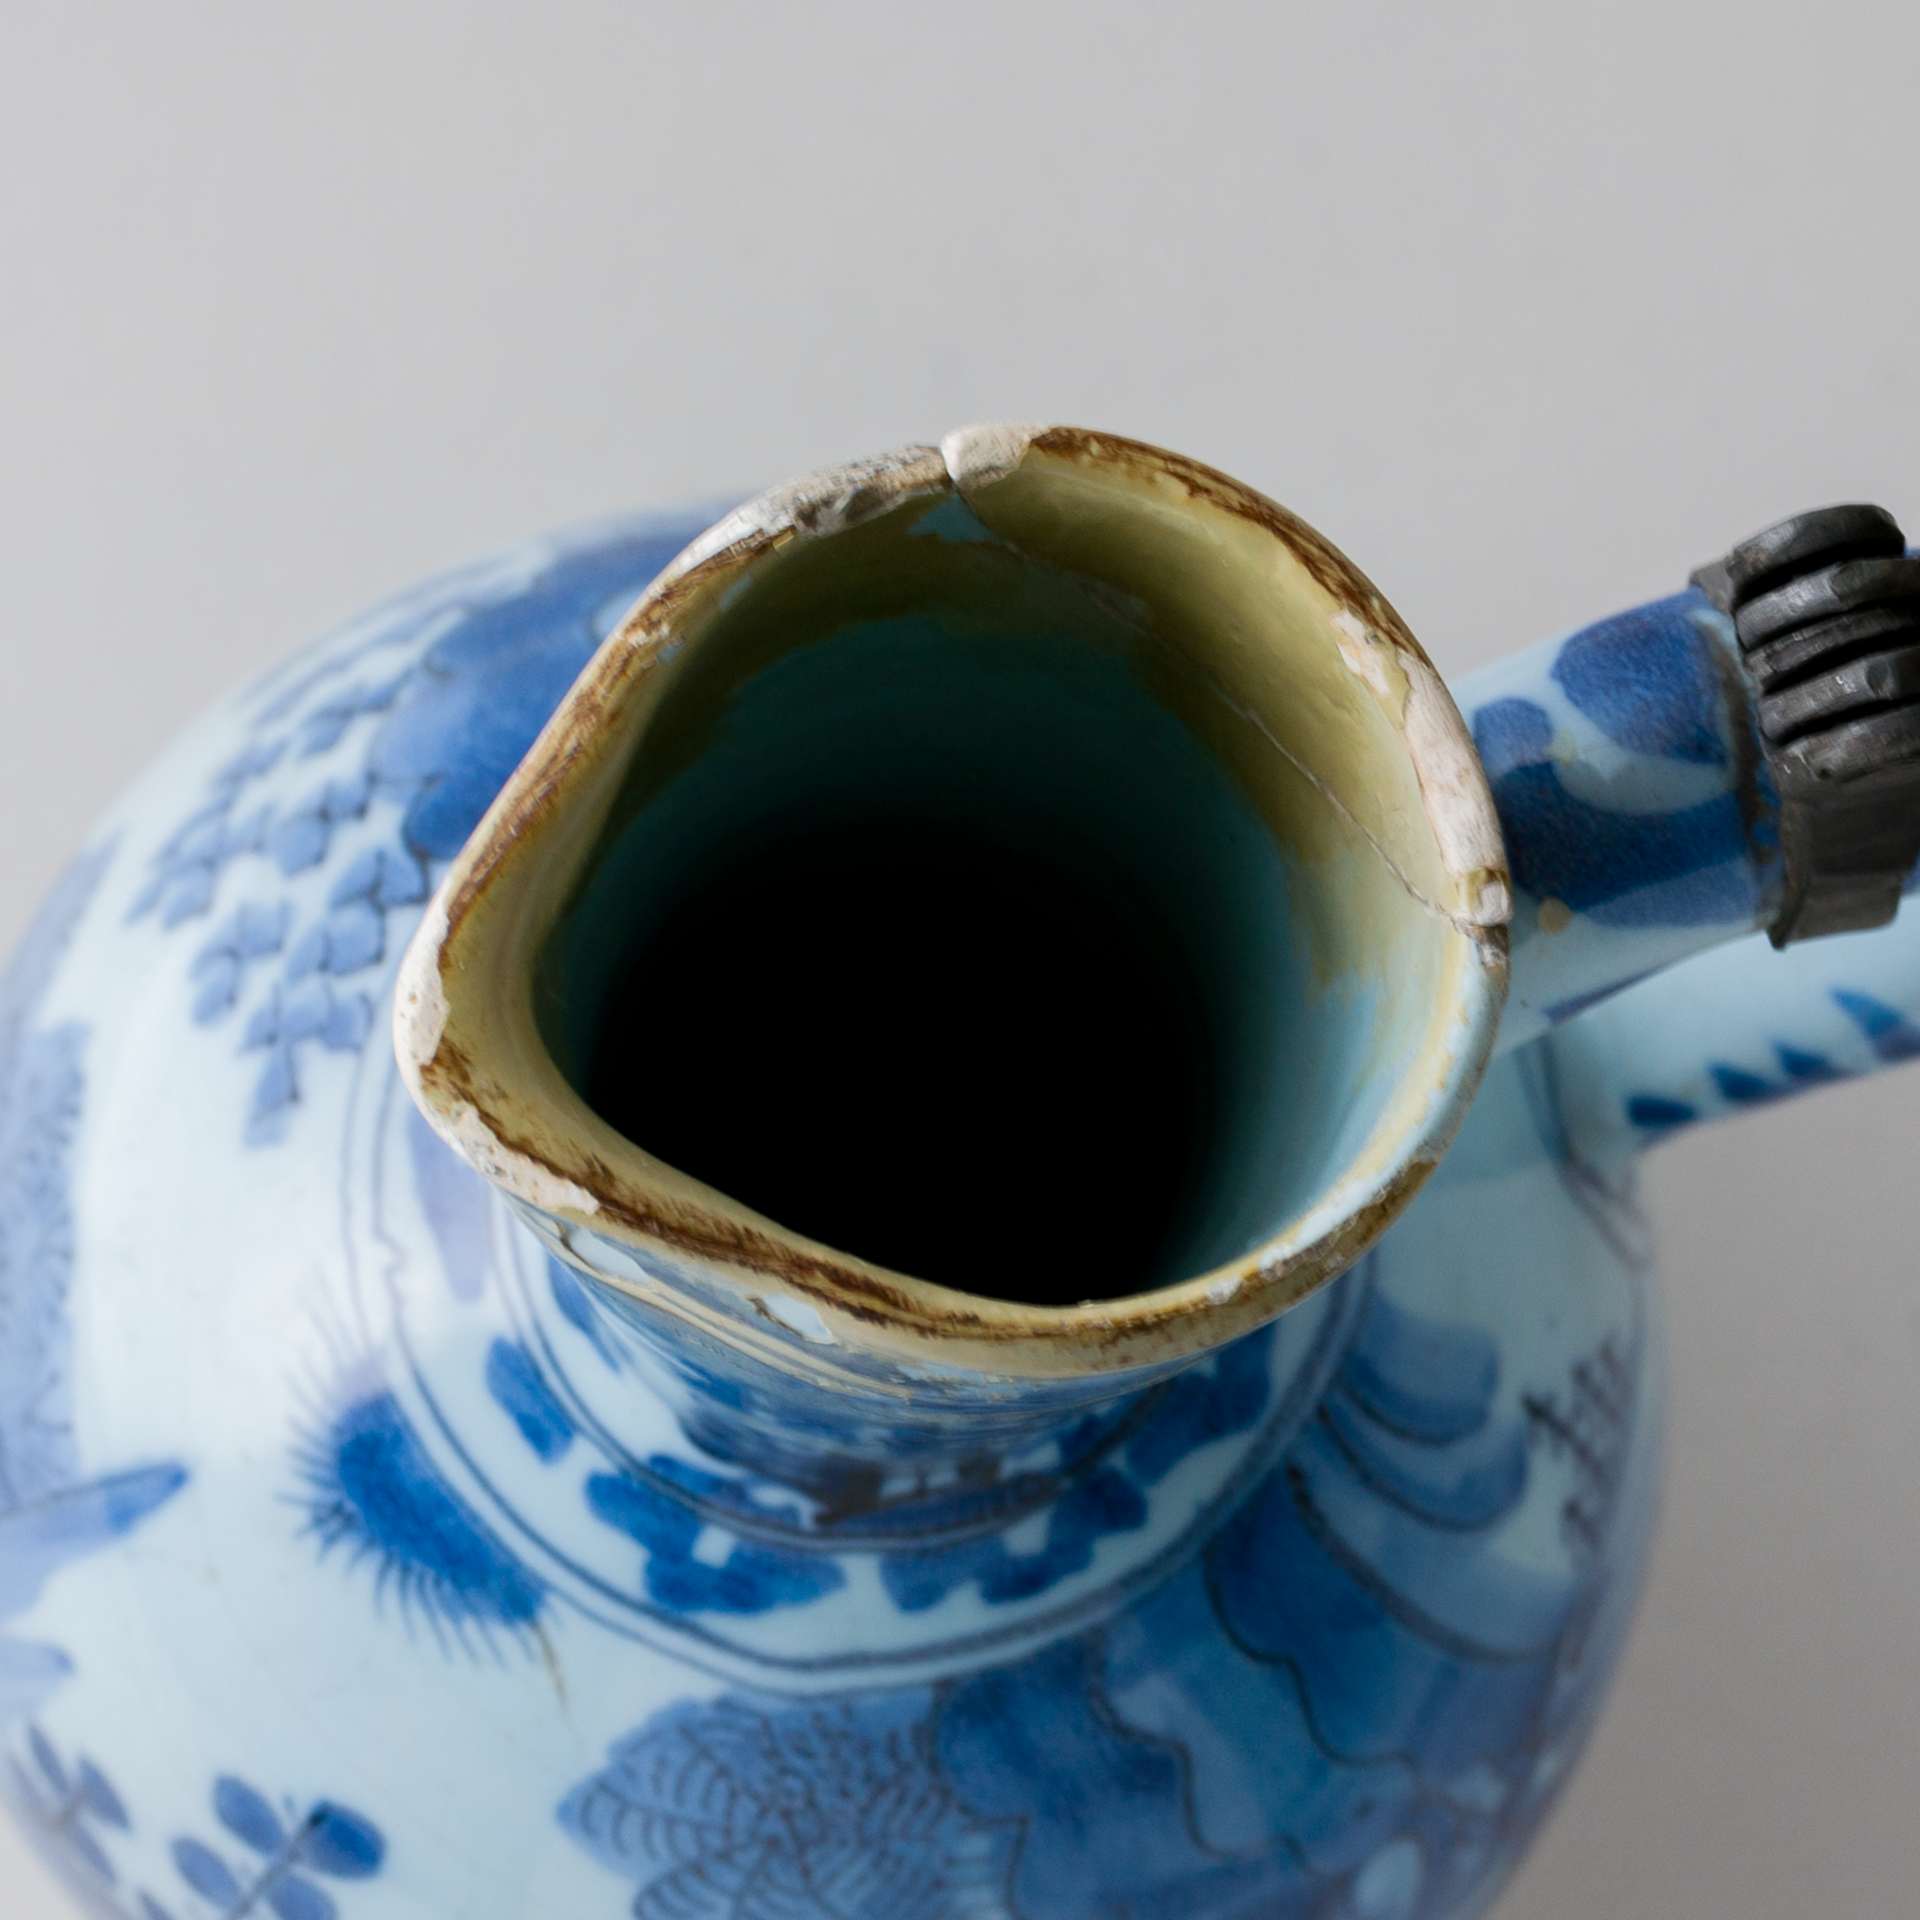 Fayence Delft Krug mit Zinndeckel im Chinesischen Stil  Ende 18. Jhd - Bild 11 aus 12